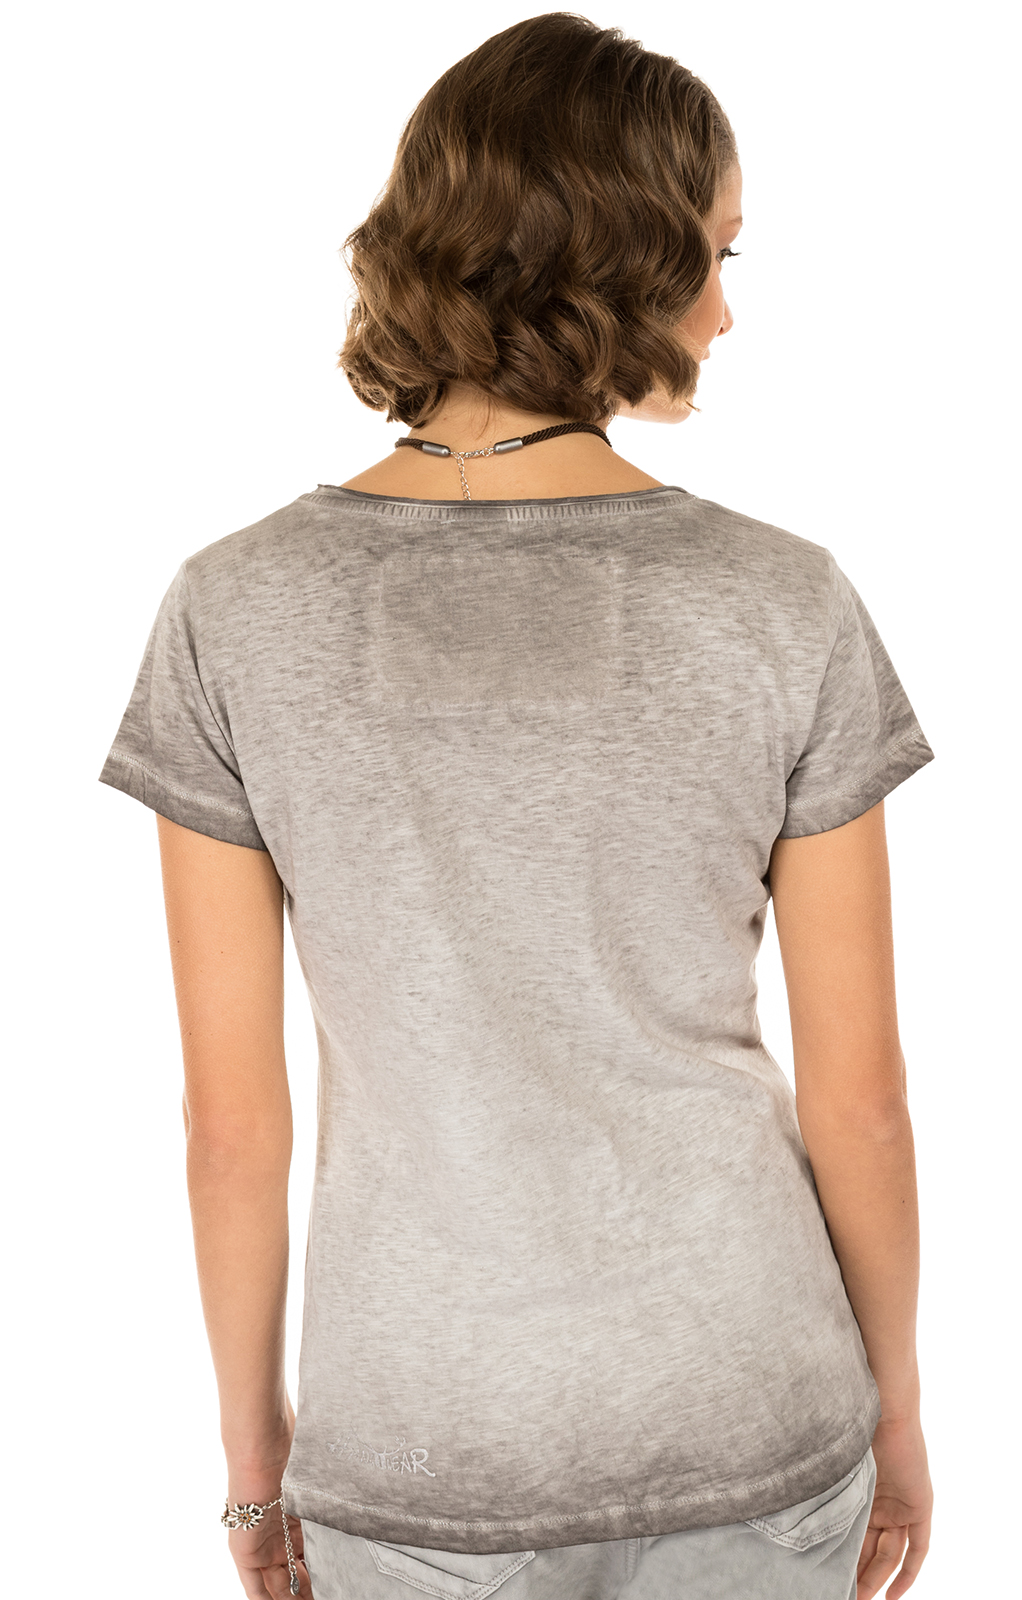 weitere Bilder von Trachten T-Shirt MISSY grau Edelweiss